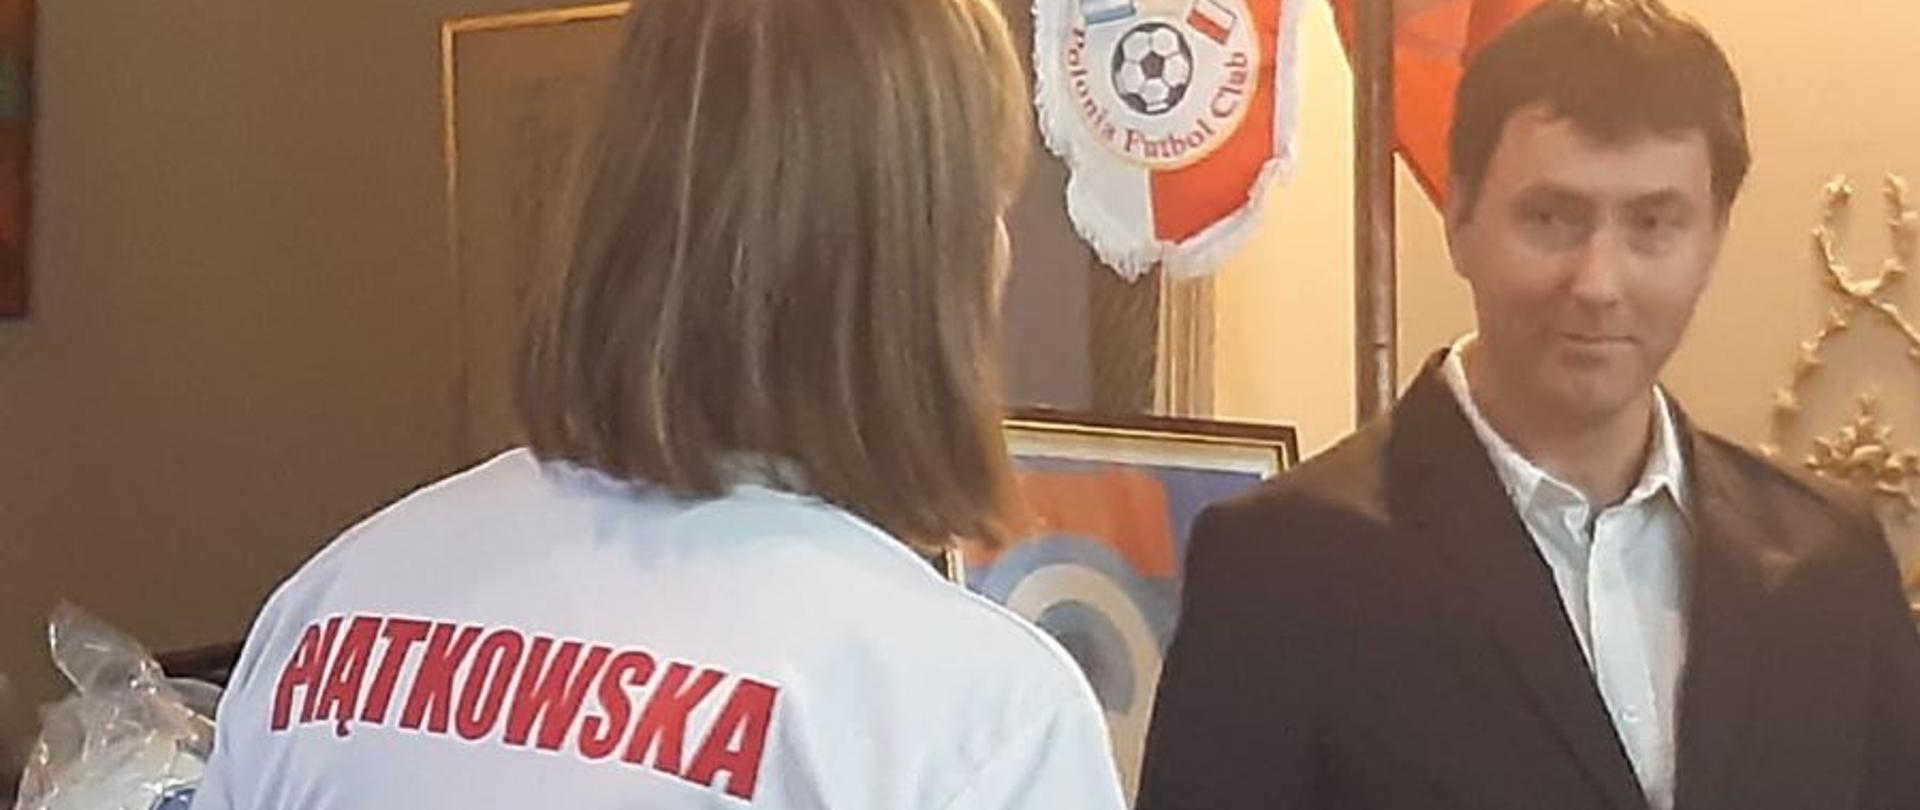 Klub piłkarski Polonia Fútbol Club z Buenos Aires obchodził 15 rocznicę istnienia. To był świetny pretekst do promocji historii, nie tylko polskiego futbolu.
